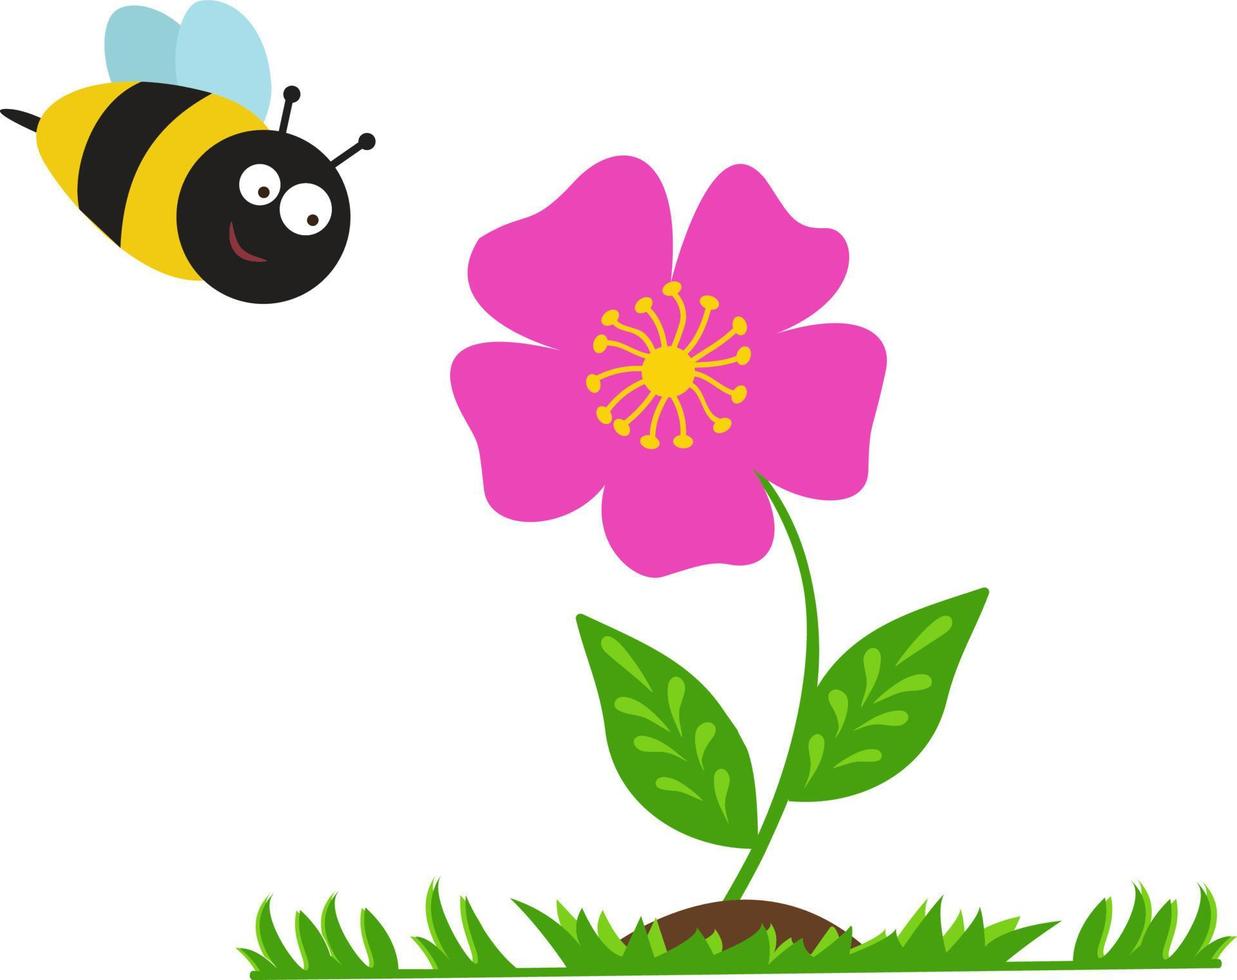 Vektorillustration mit einer Blume und einer Biene. süße kinderillustration. Es wird für Kinderbücher und -zeitschriften, Kinderzimmerdekoration, Marketing, Werbung, Webanwendungen und Design verwendet. vektor